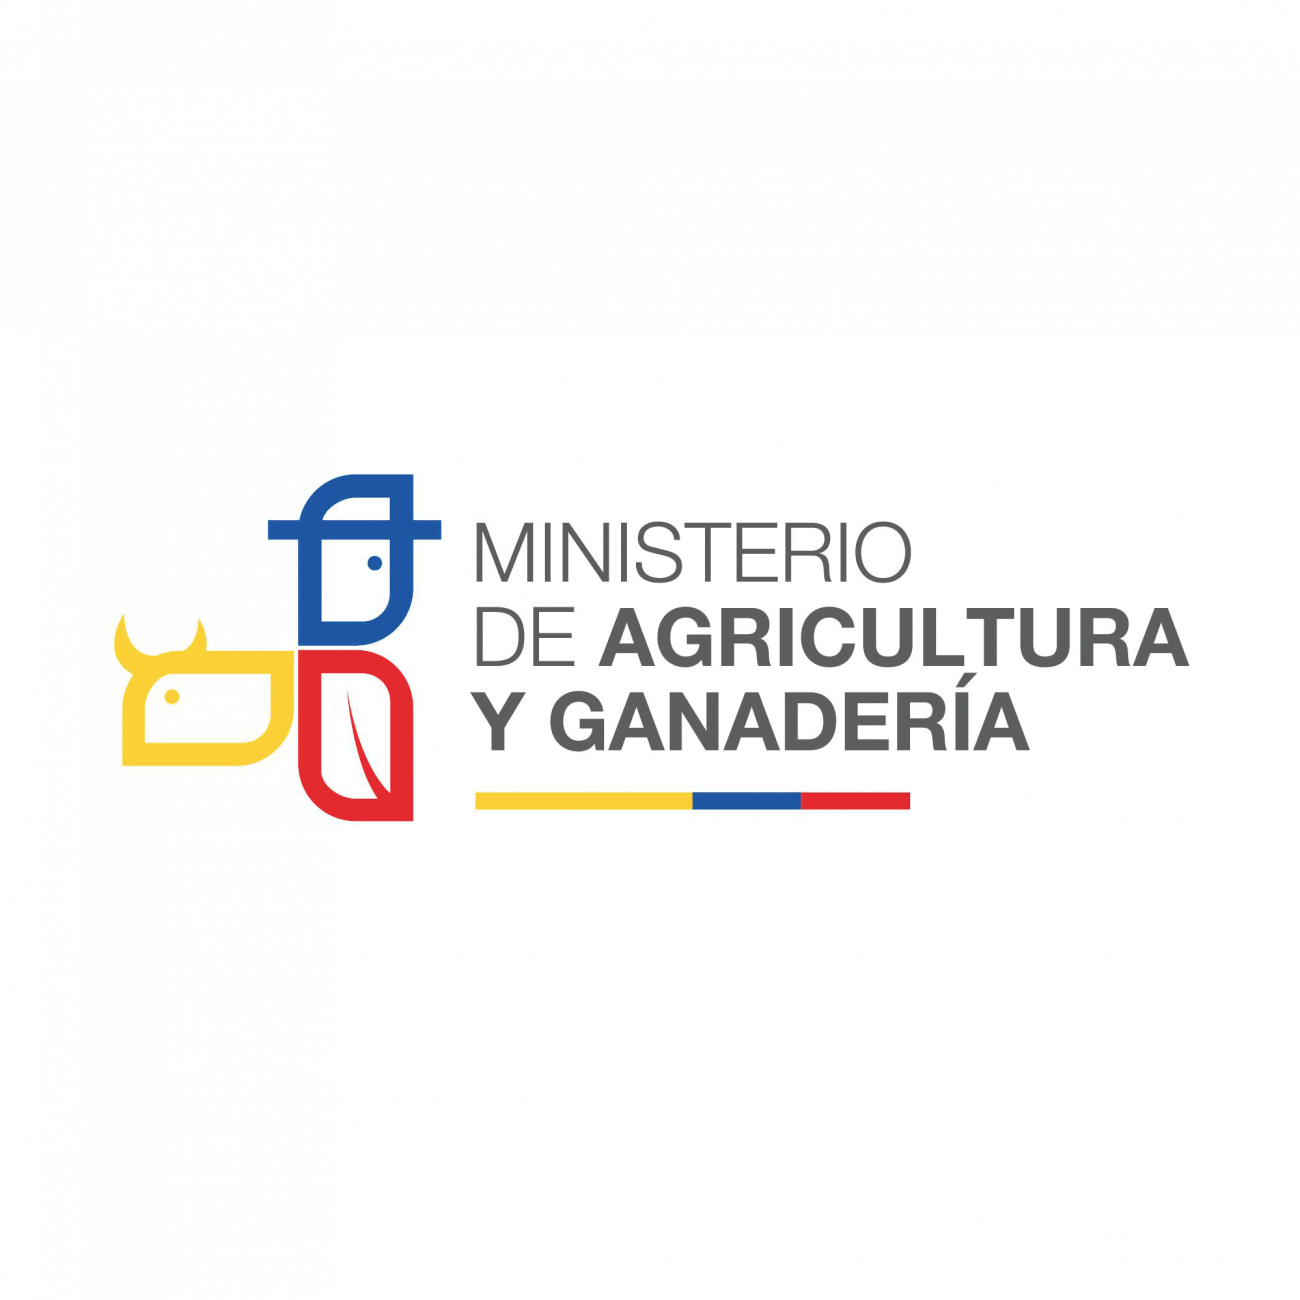 Ministerio de Agricultura y Ganadería del Ecuador